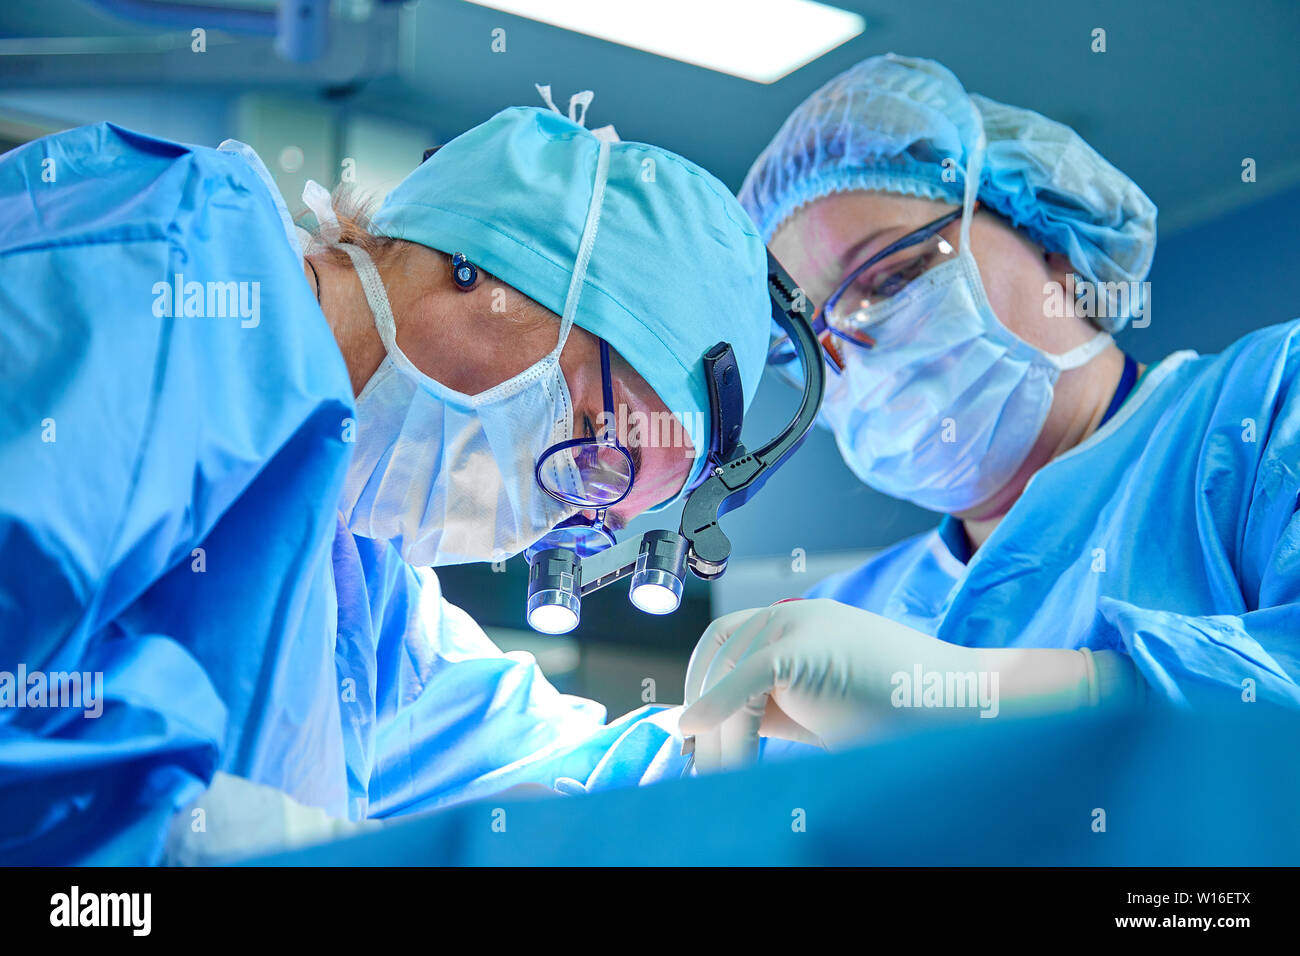 Une équipe du chirurgien en uniforme effectue une opération sur un patient dans une clinique de chirurgie cardiaque. La médecine moderne, une équipe de professionnels de la santé, les chirurgiens. Banque D'Images